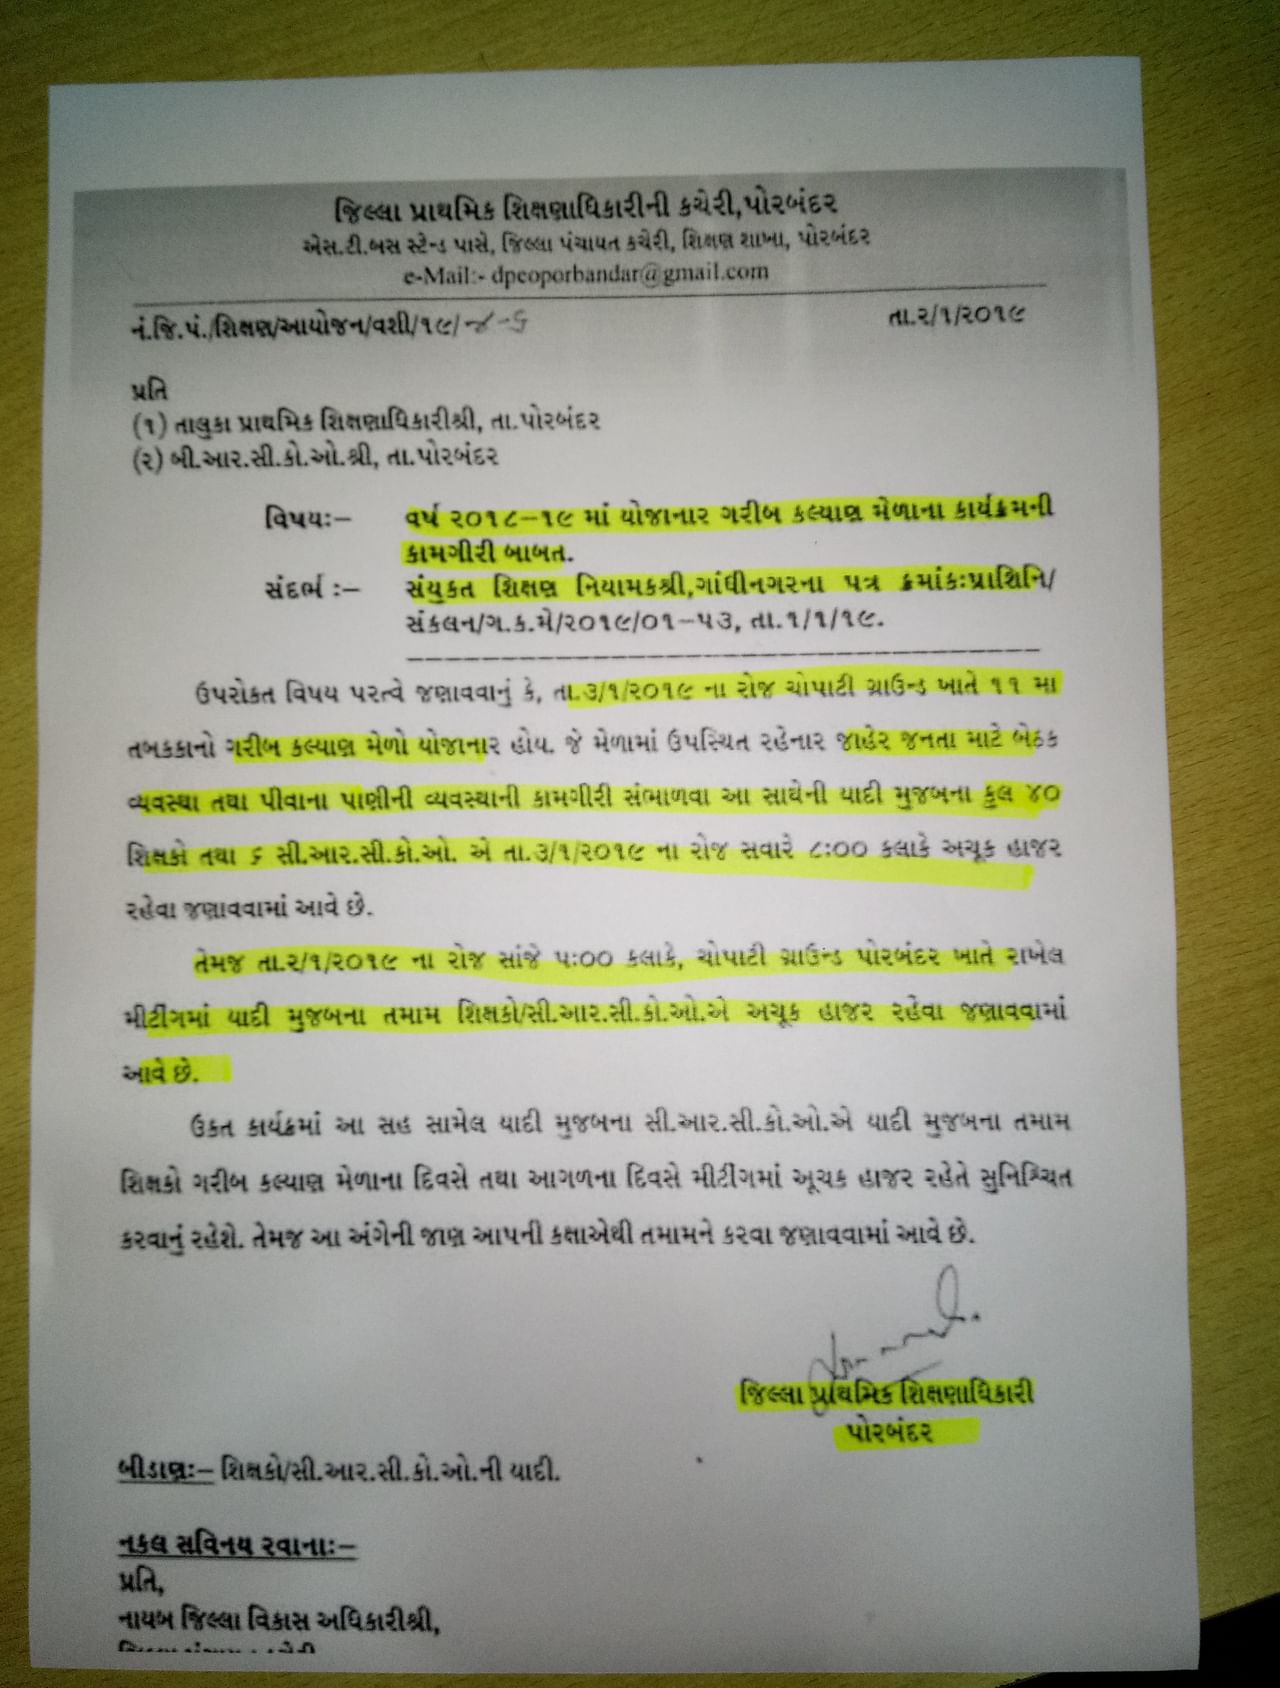 ગોલમાલ હૈ ભાઈ સબ ગોલમાલ હૈ ! ગુજરાતમાં ટીચરોને લઈને સરકારે જાહેર કર્યો એક પરિપત્ર અને ગણતરીના કલાકોમાં જ કરી નાખ્યો રદ્દ